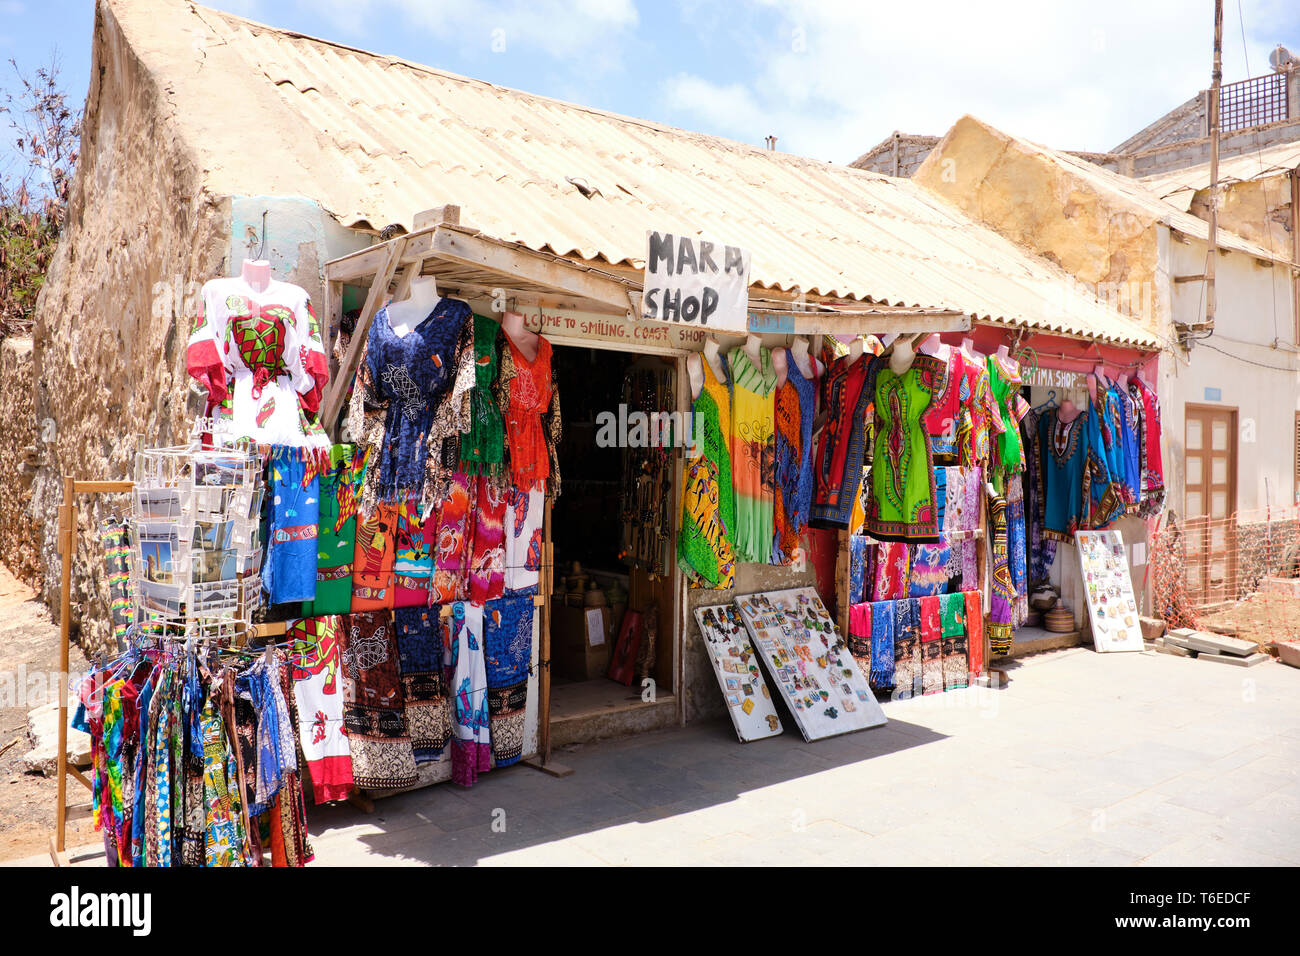 Mara Shop un petit magasin vendant des souvenirs touristiques, Santa Maria, île de Sal, Cap-Vert, Afrique Banque D'Images